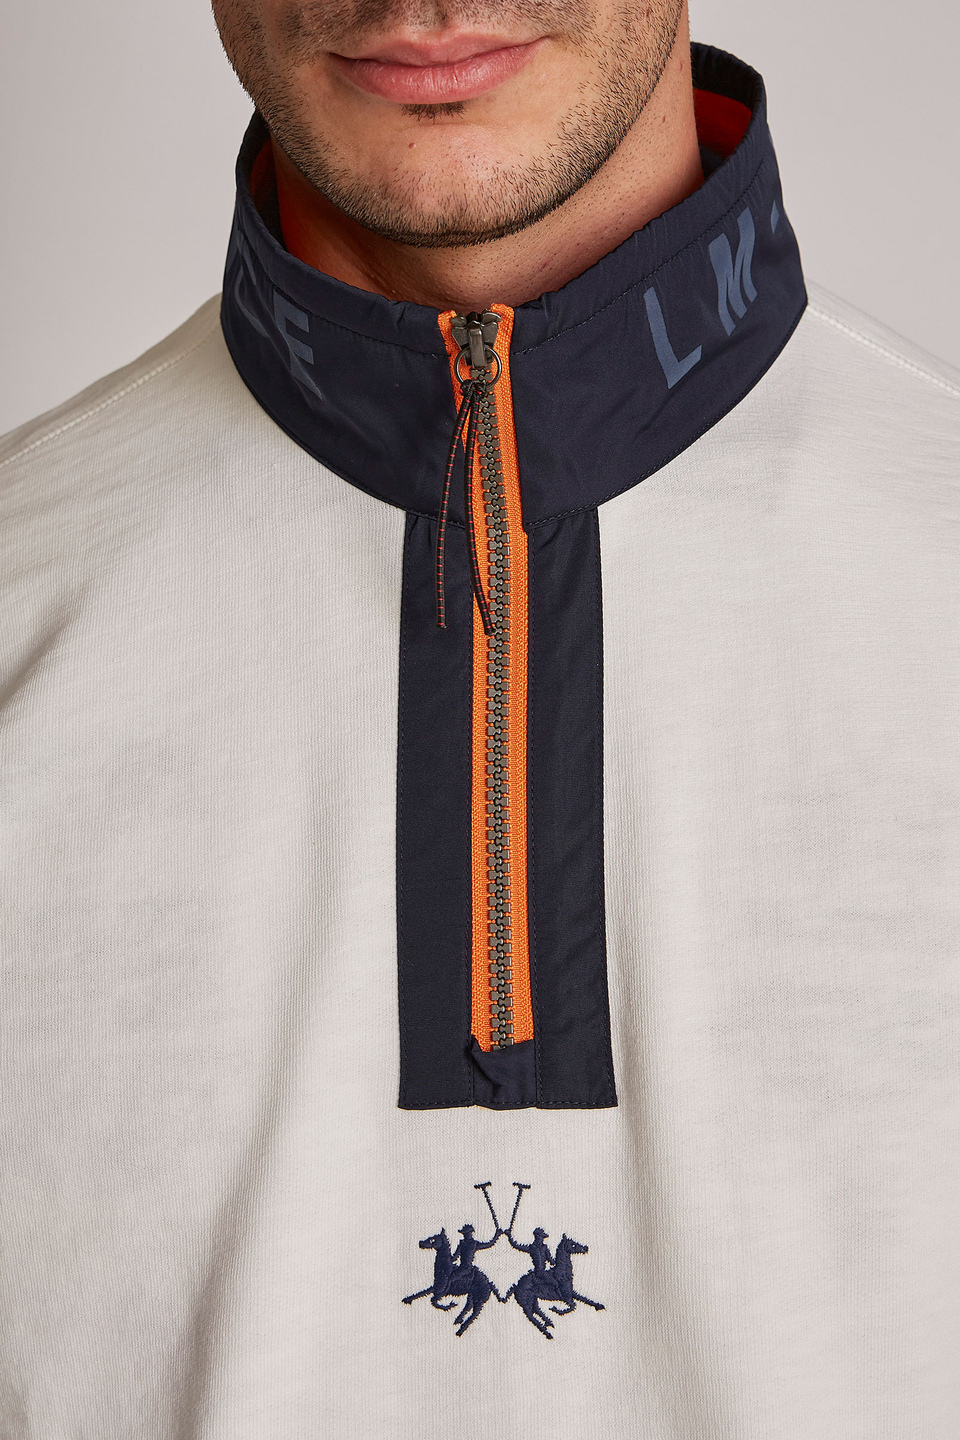 Sweat-shirt homme 100% coton, avec fermeture zippée et coupe oversize | La Martina - Official Online Shop